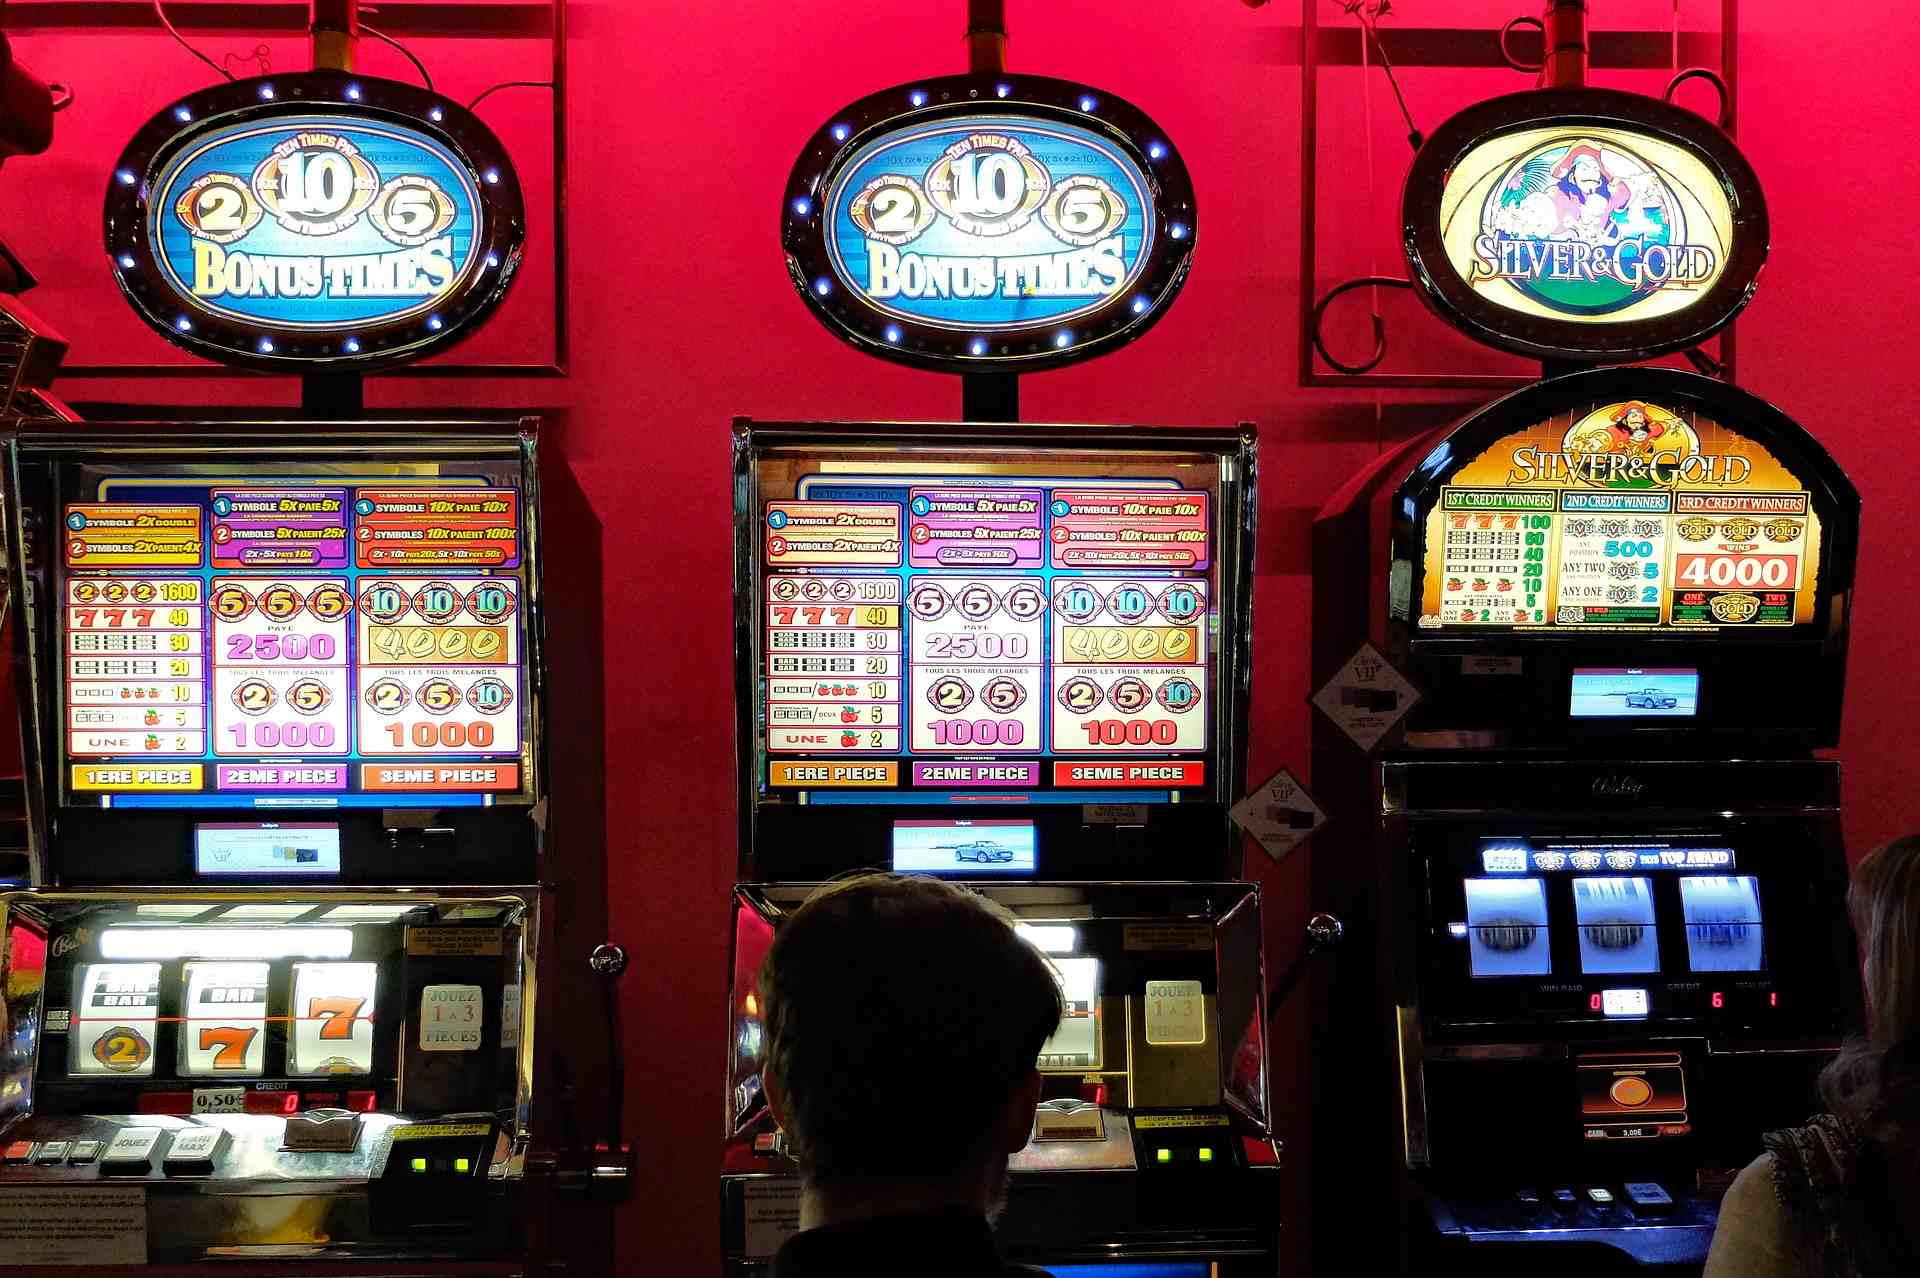 Ausländische Online Casinos Zu verkaufen – Wie viel ist Ihr Wert?